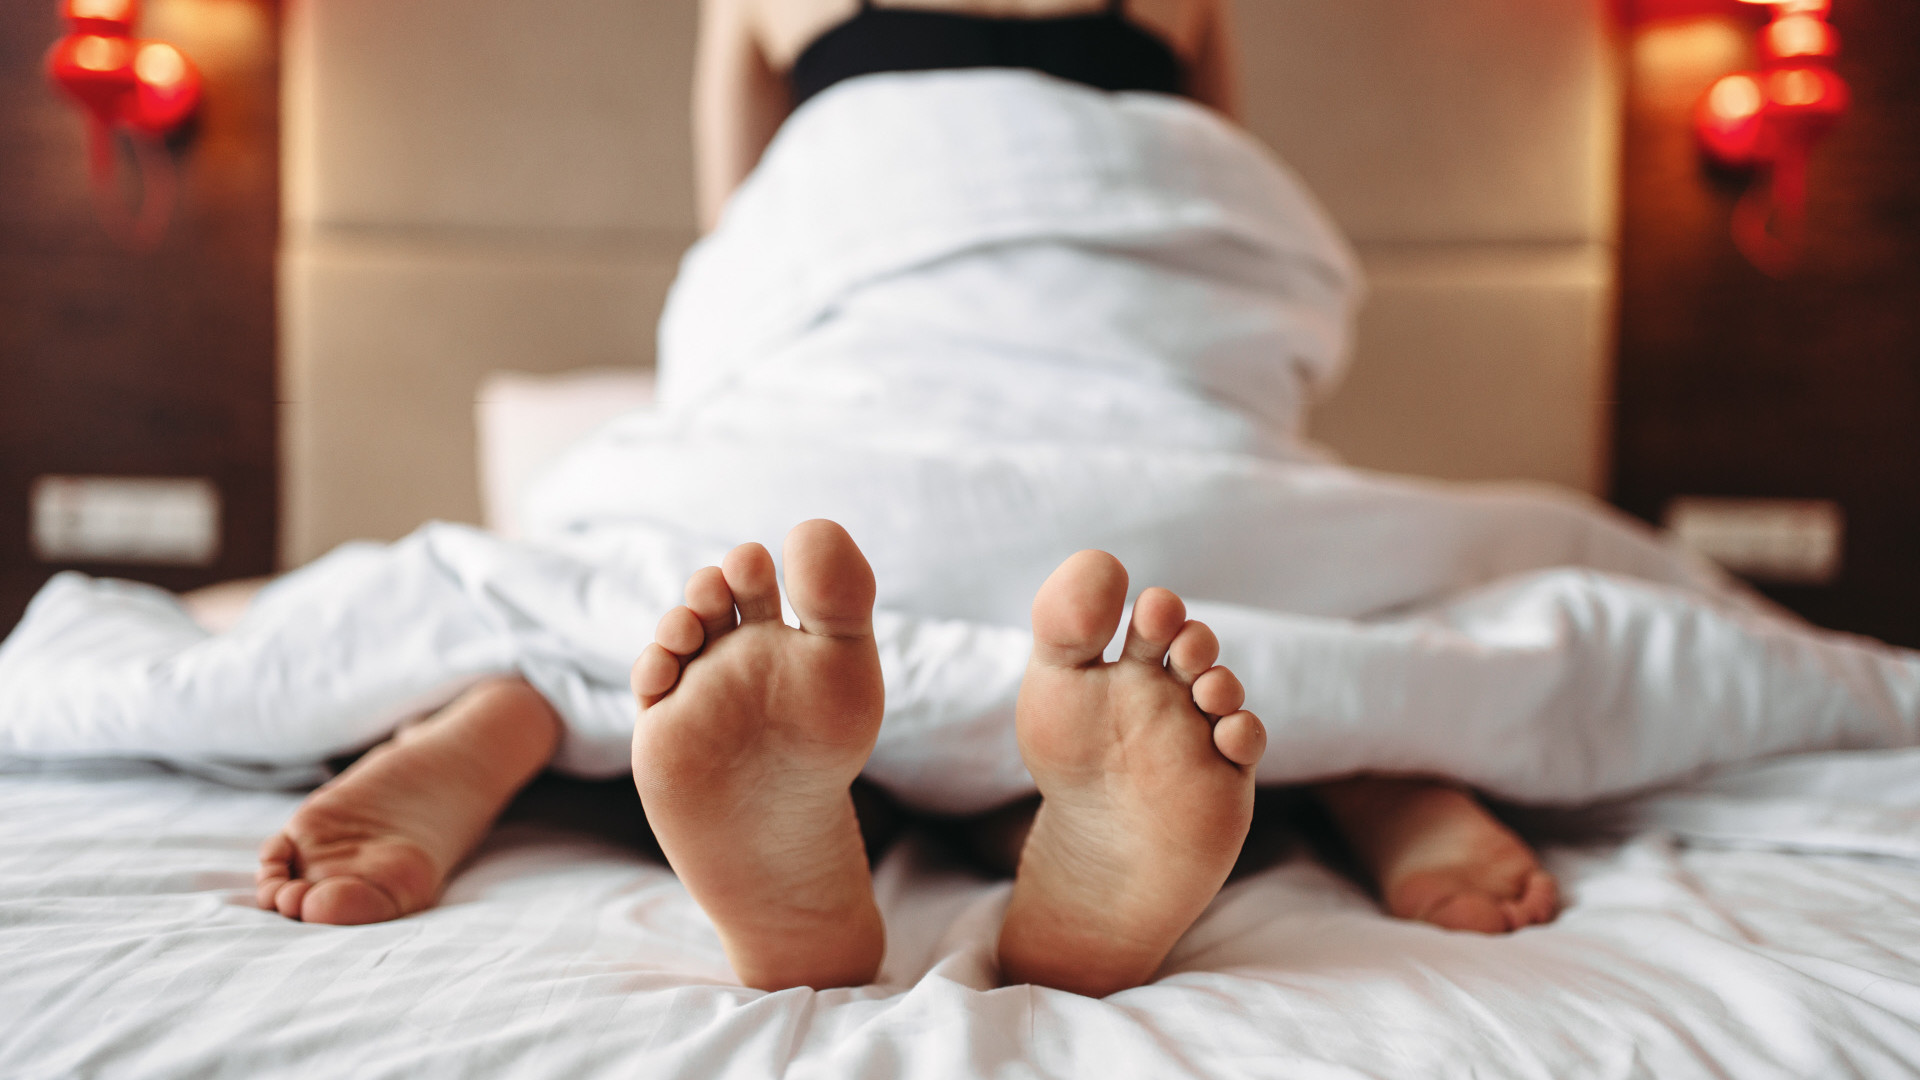 Estallar emocionante Habitat Sexo: Por qué las mujeres de 50 disfrutan más en la cama, revelado -  Vozpópuli